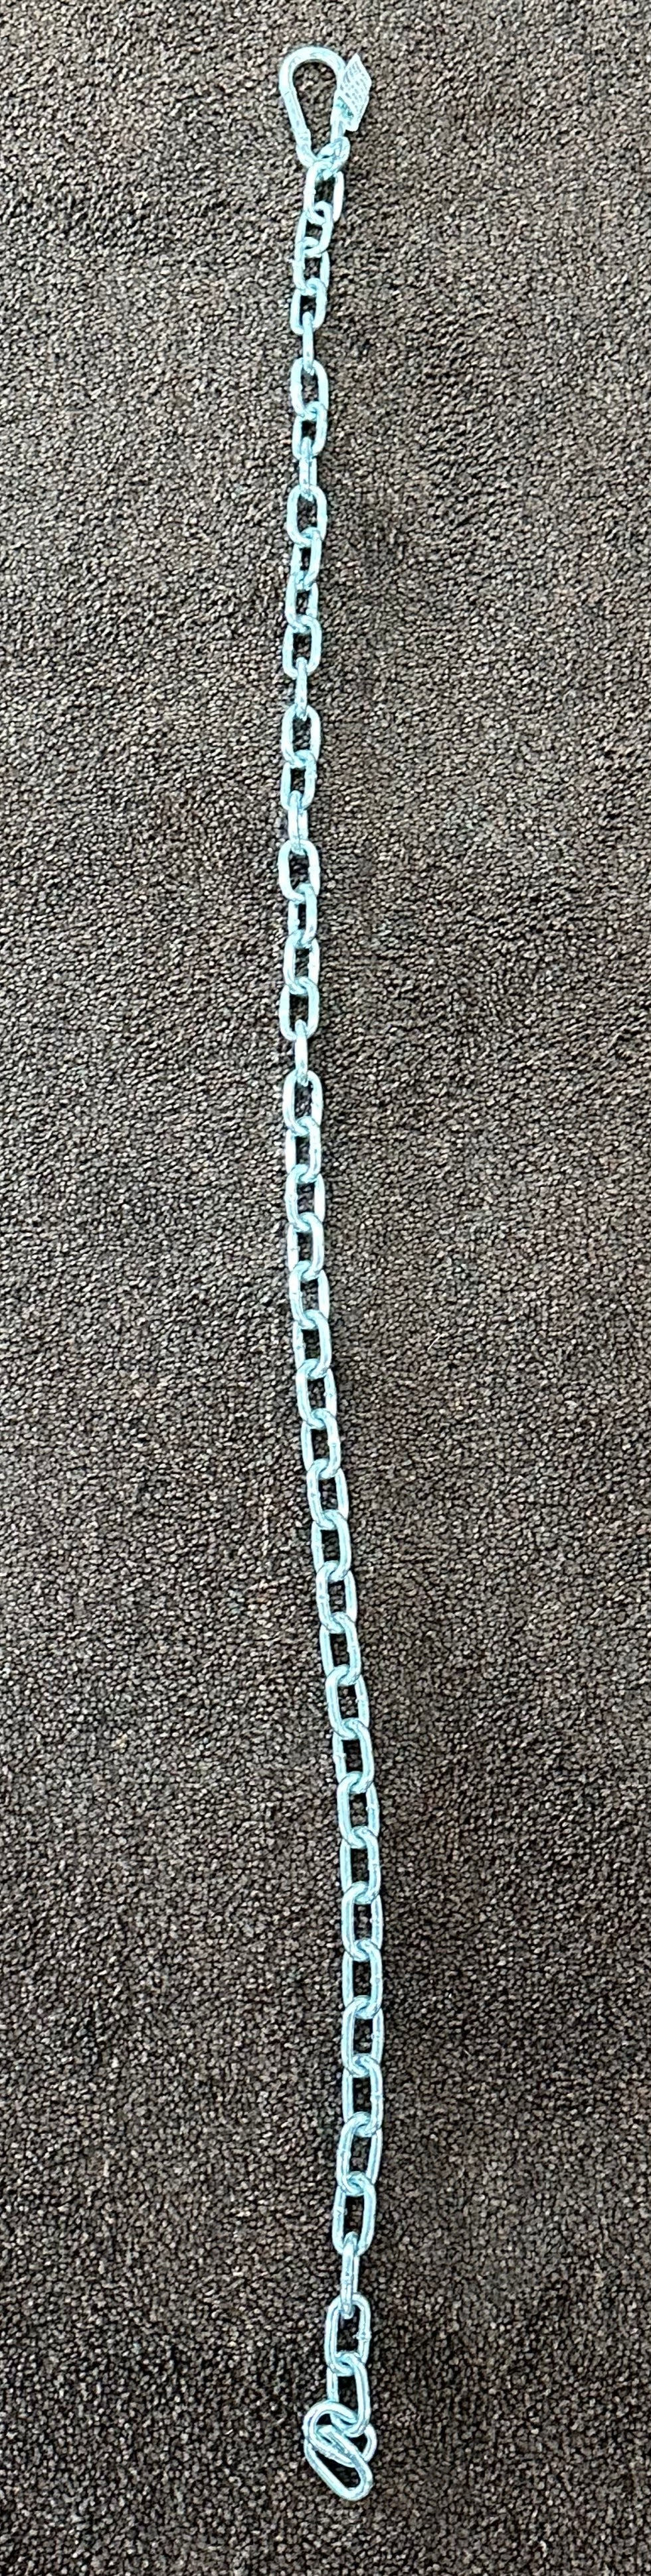 Gate Chains - 4' Long